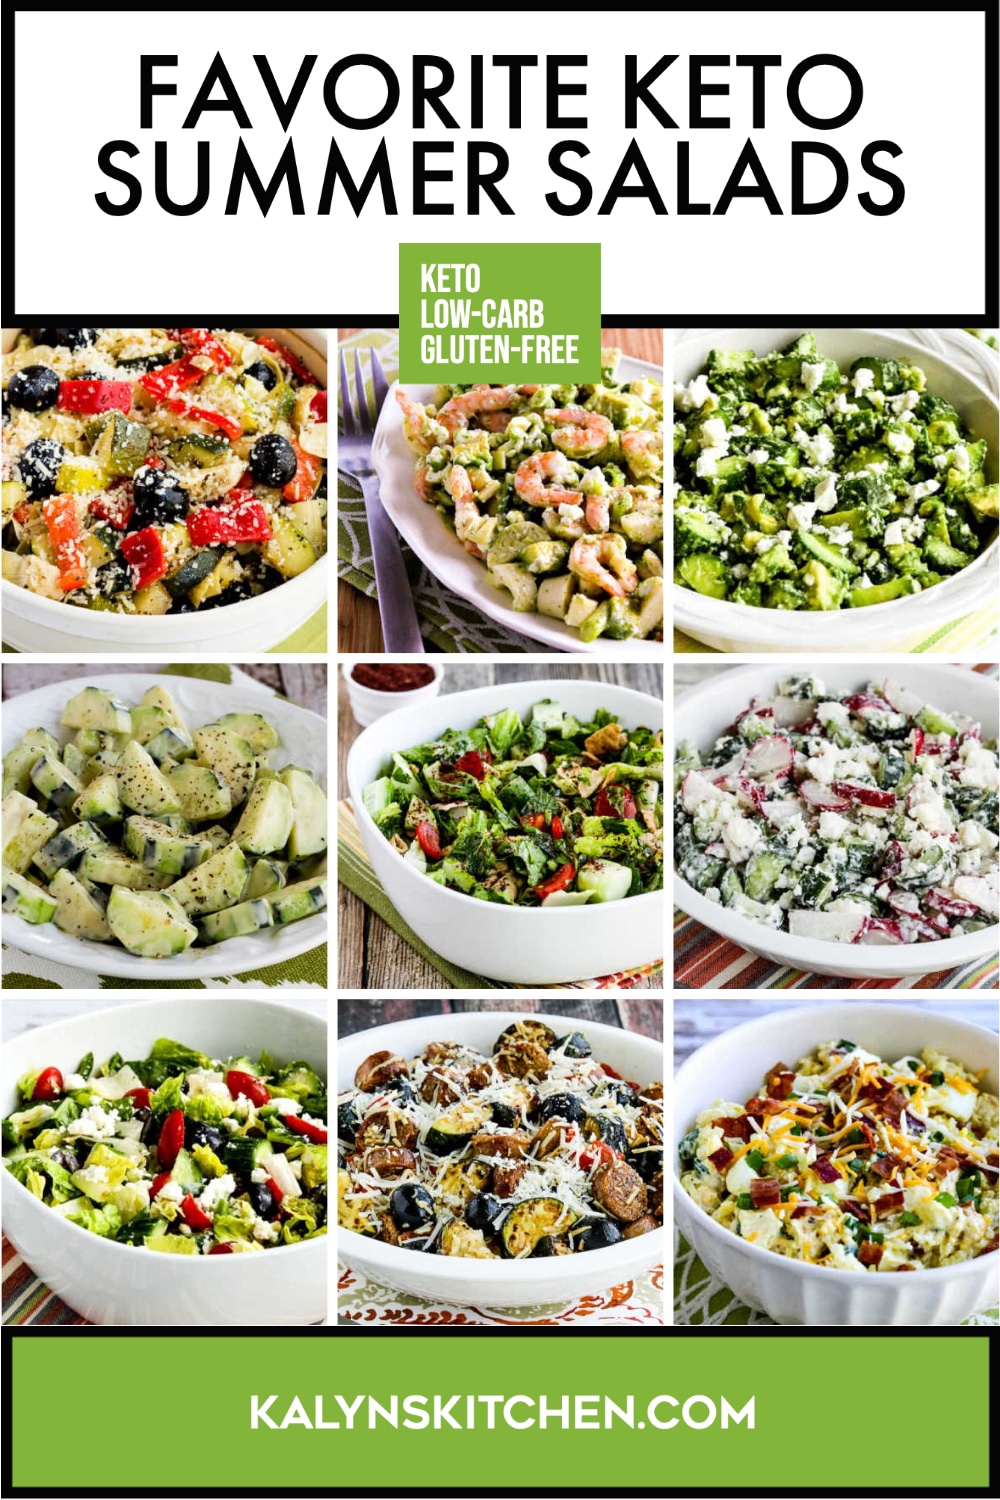 Pinterest image of Favorite Keto Summer Salads